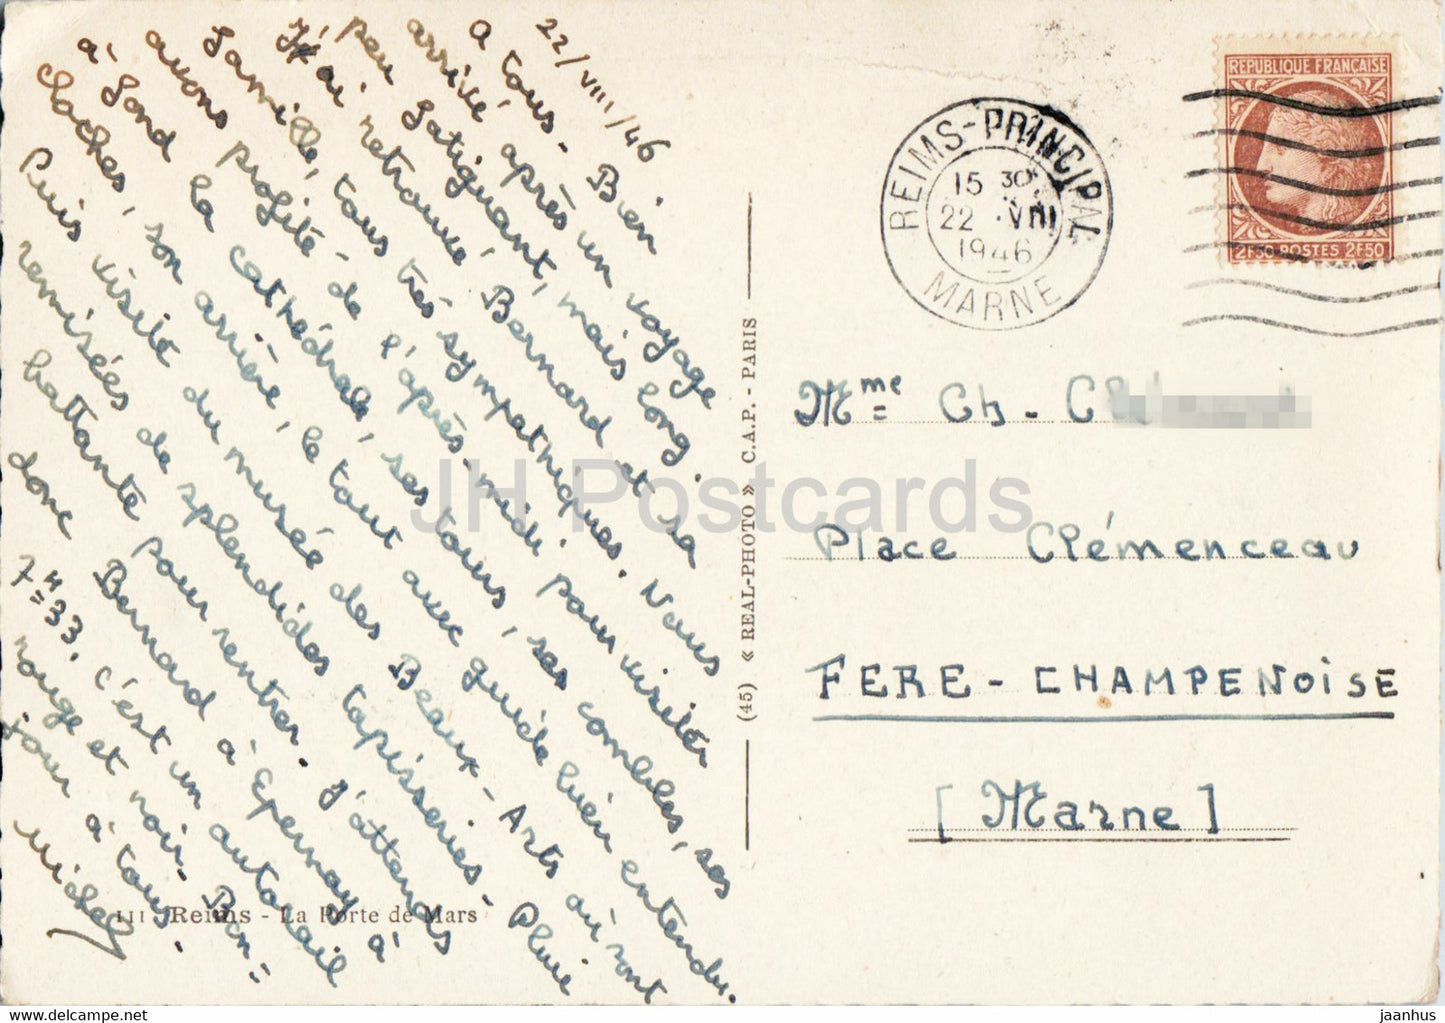 Reims - La Porte de Mars - architecture ancienne - carte postale ancienne - 1946 - France - occasion